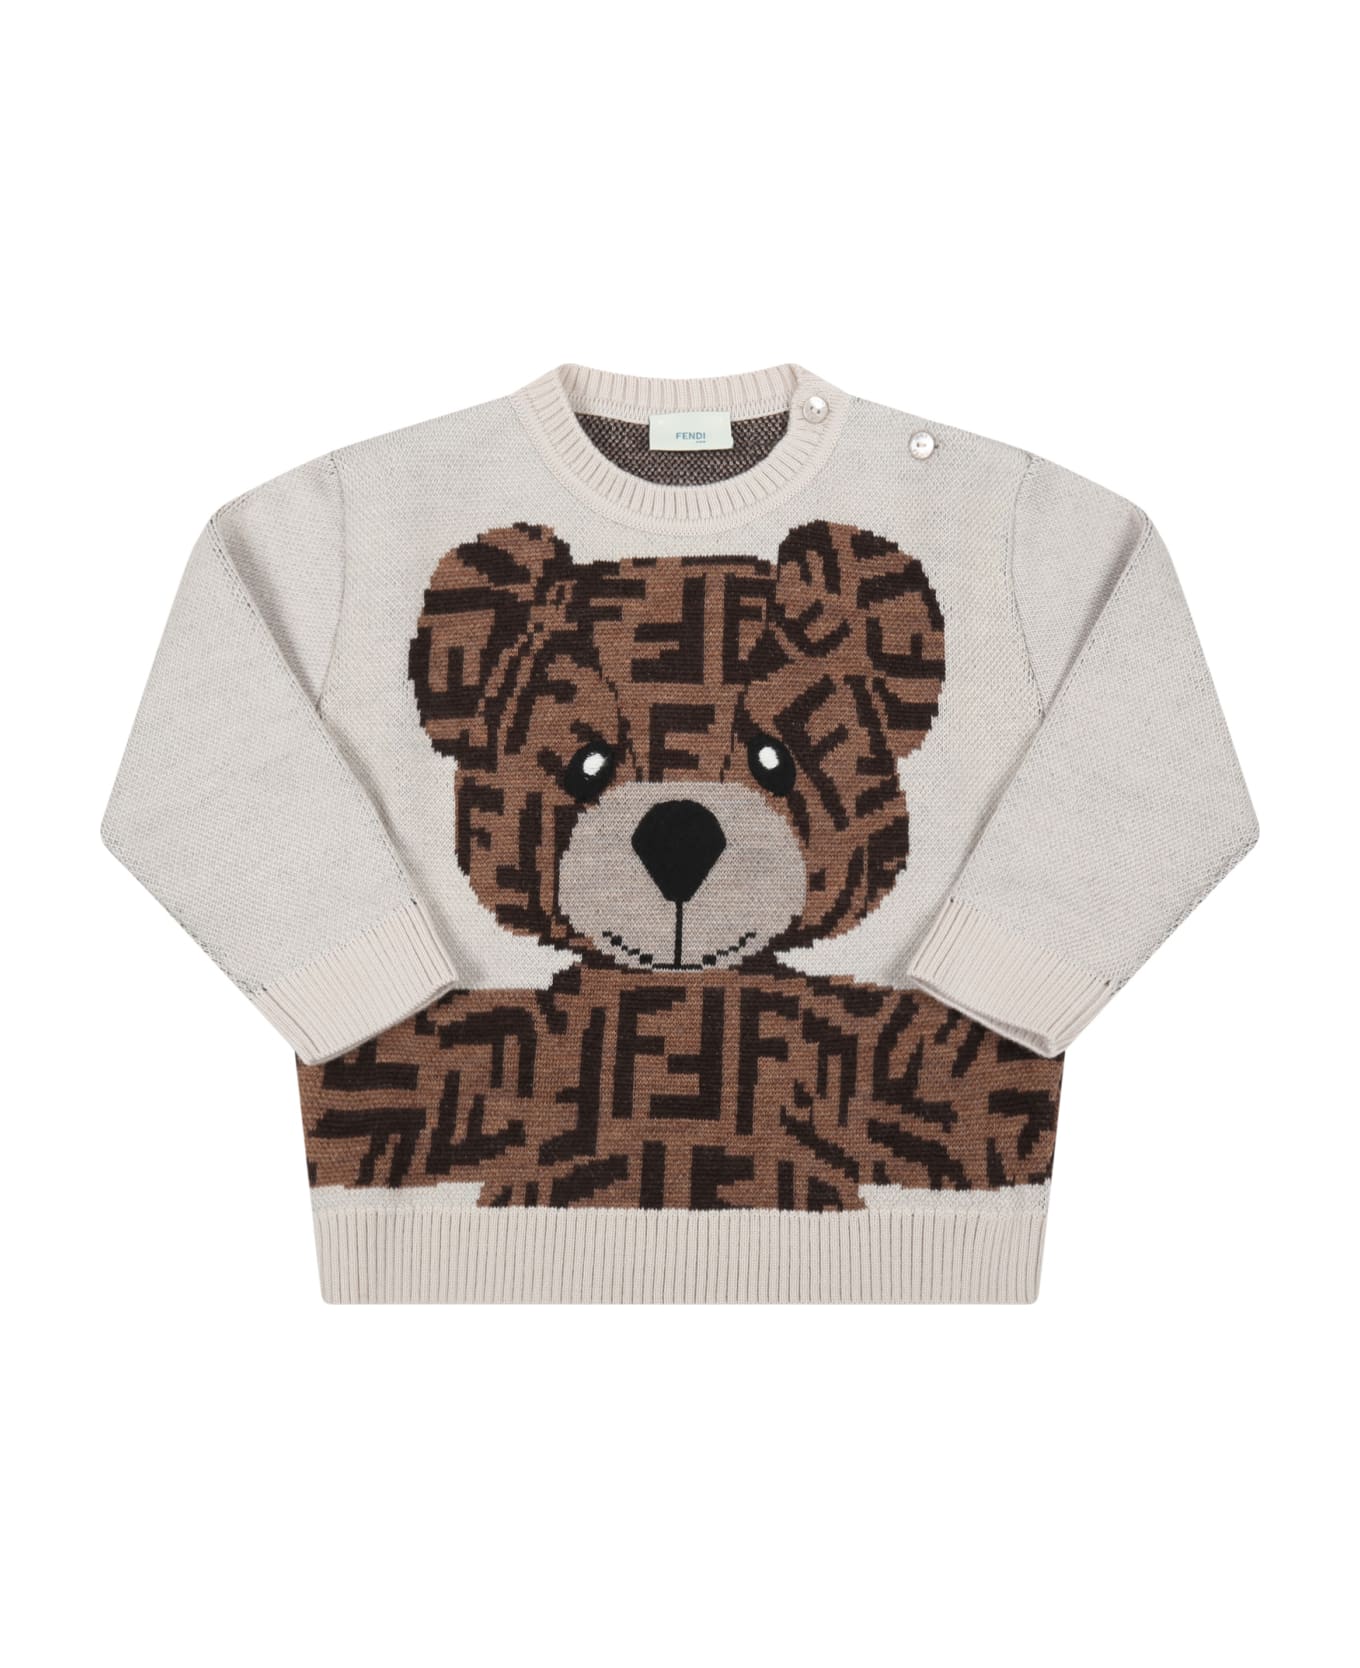 Fendi Beige Sweater For Baby Kids With Bear - Beige